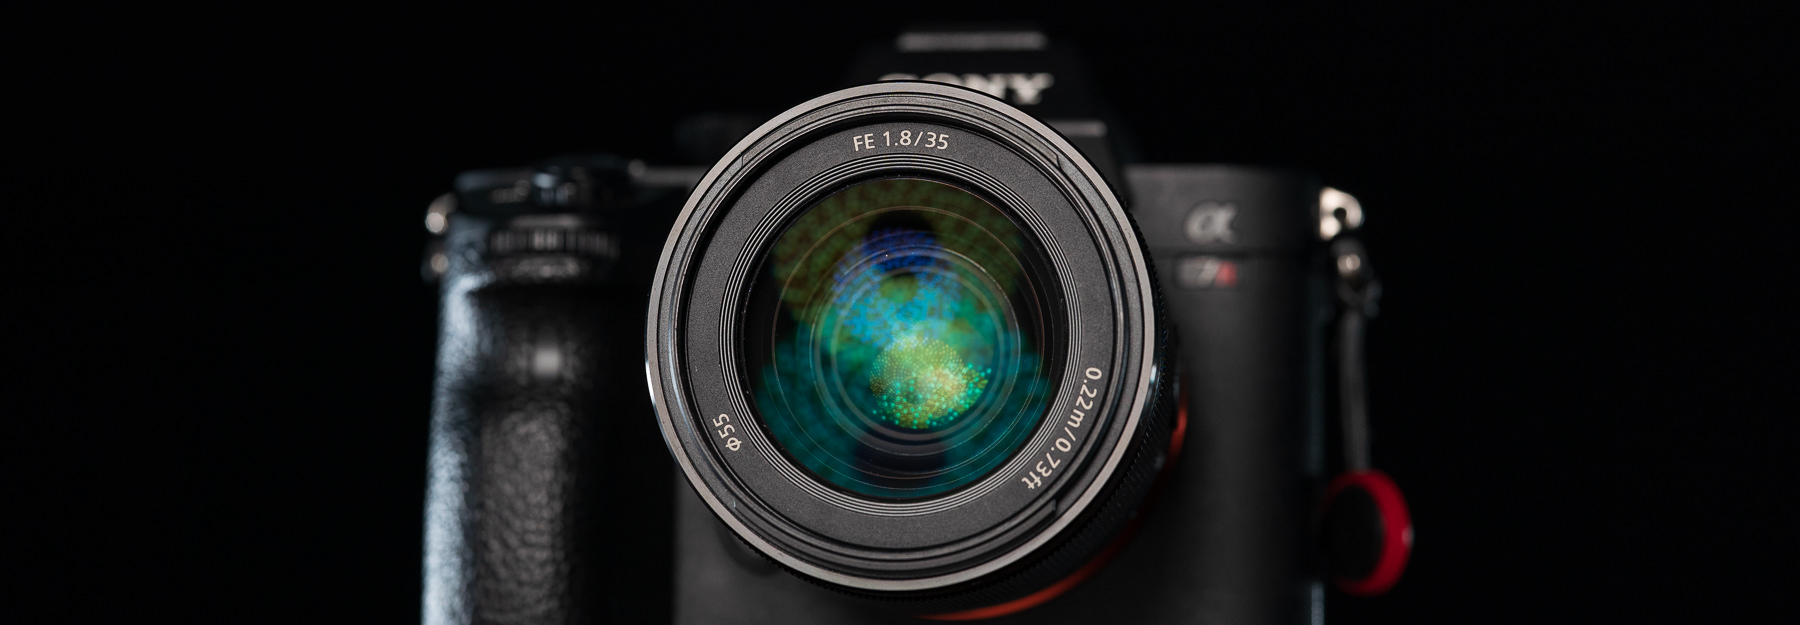 カメラ レンズ(単焦点) Sony FE 35mm F1.8 Review - DustinAbbott.net